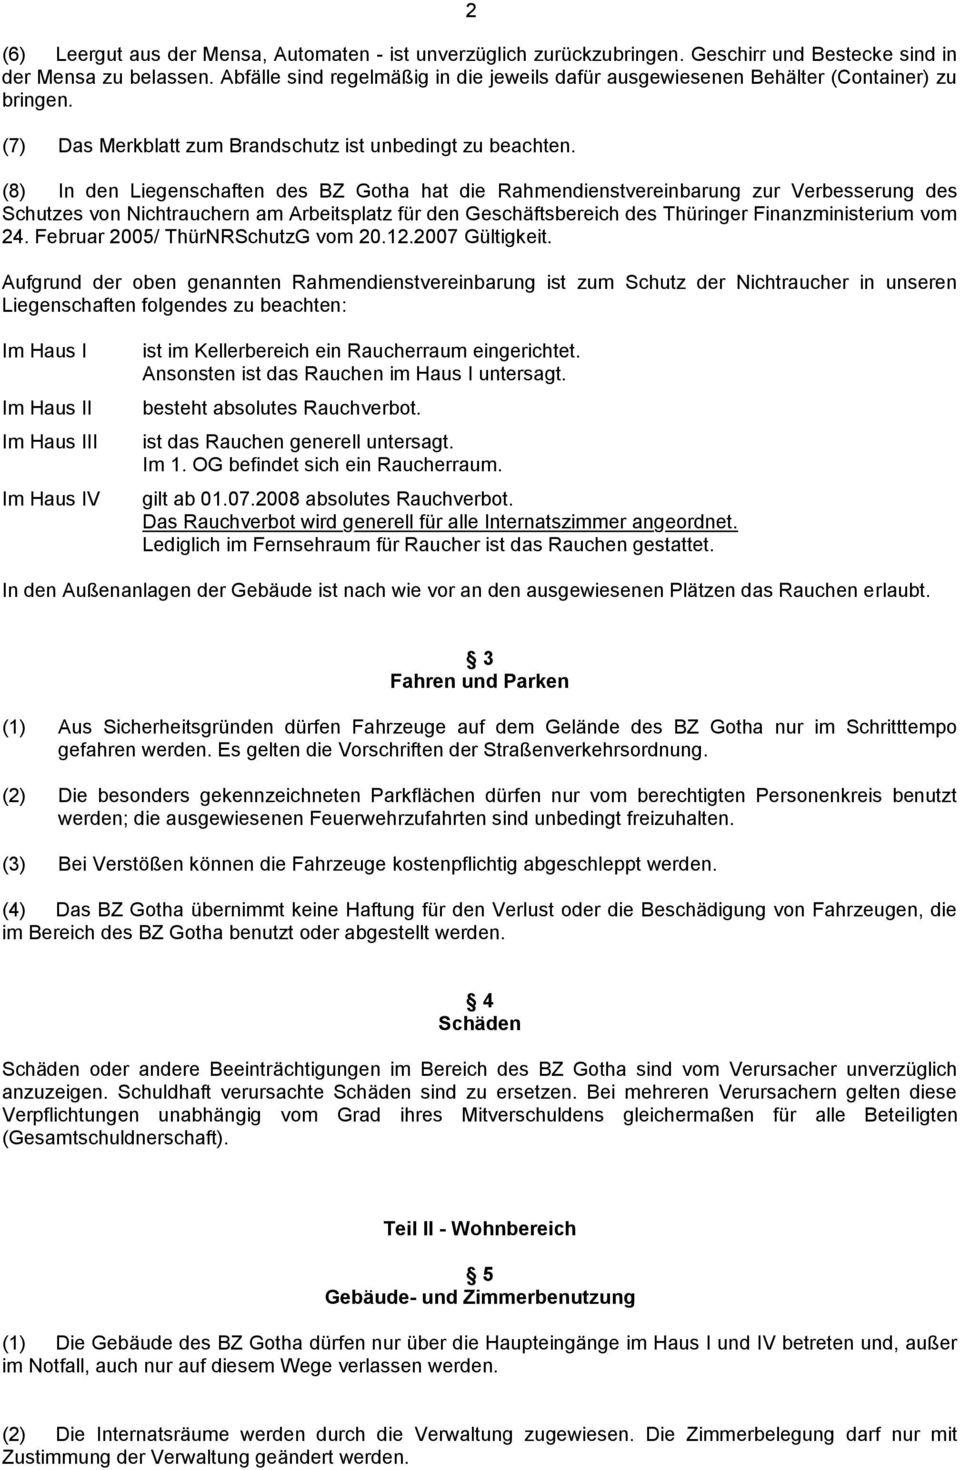 (8) In den Liegenschaften des BZ Gotha hat die Rahmendienstvereinbarung zur Verbesserung des Schutzes von Nichtrauchern am Arbeitsplatz für den Geschäftsbereich des Thüringer Finanzministerium vom 24.